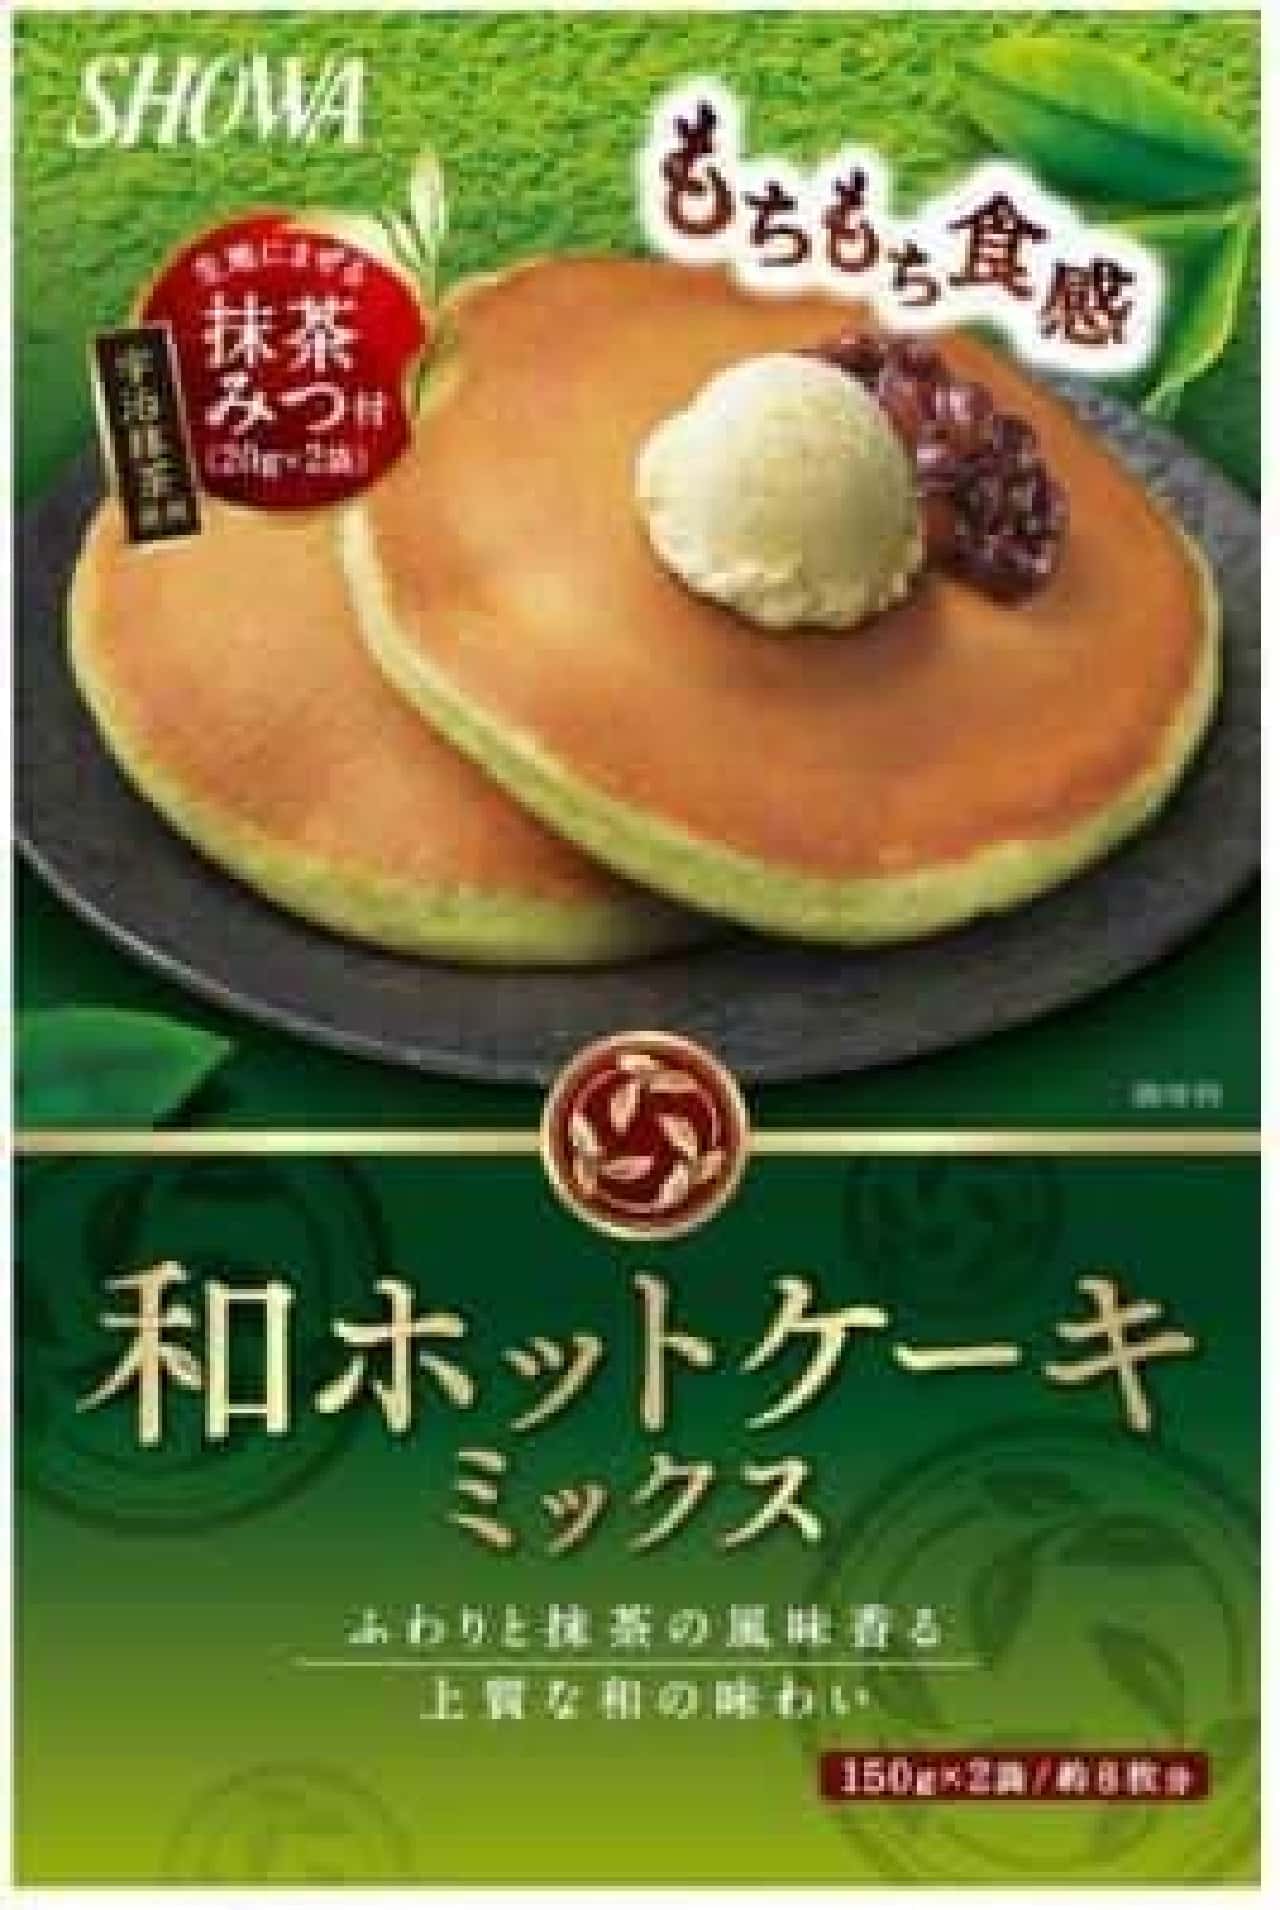 "Japanese pancake mix"